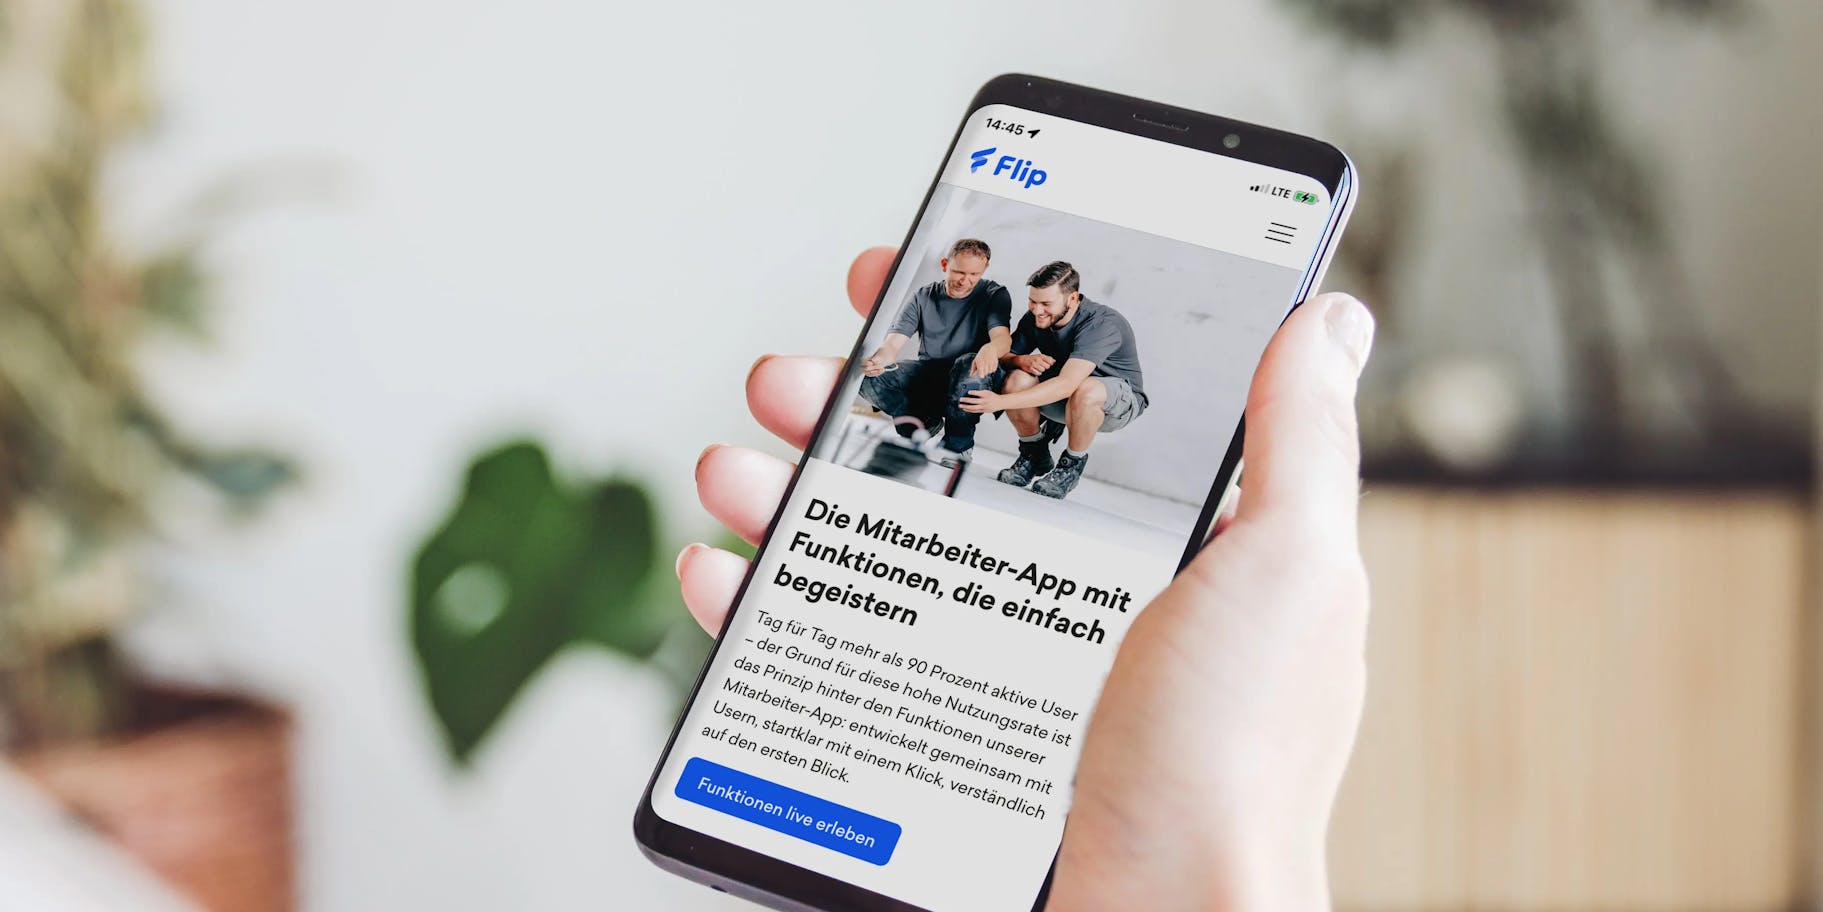 Flip app website development